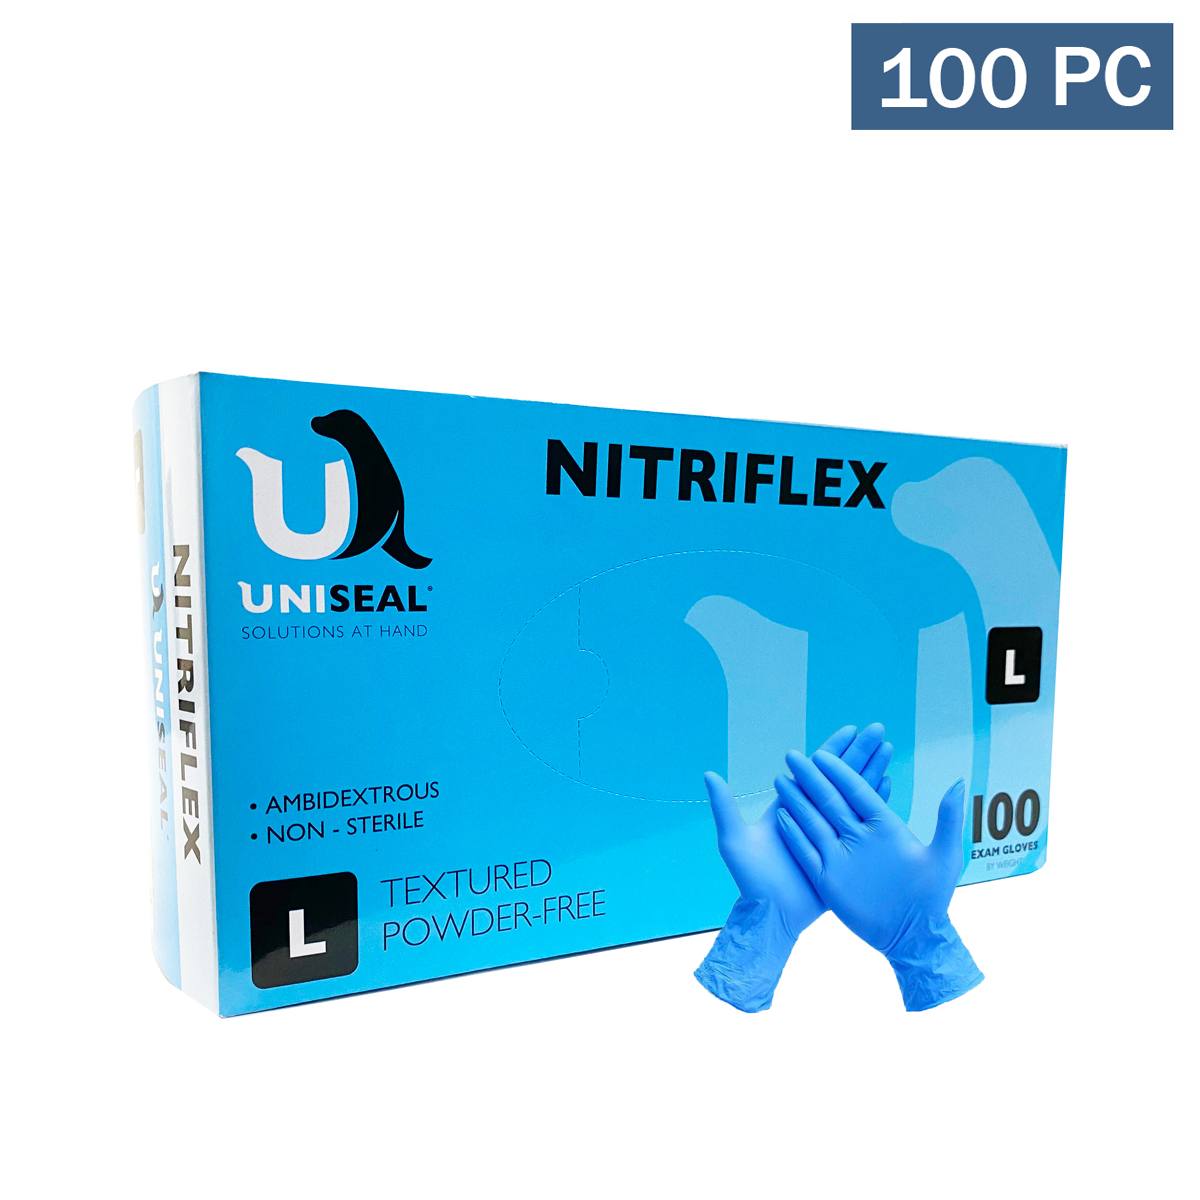 UniSeal Nitriflex Premium Exam Gloves, Blue 100 Pieces (L) Health Supply World